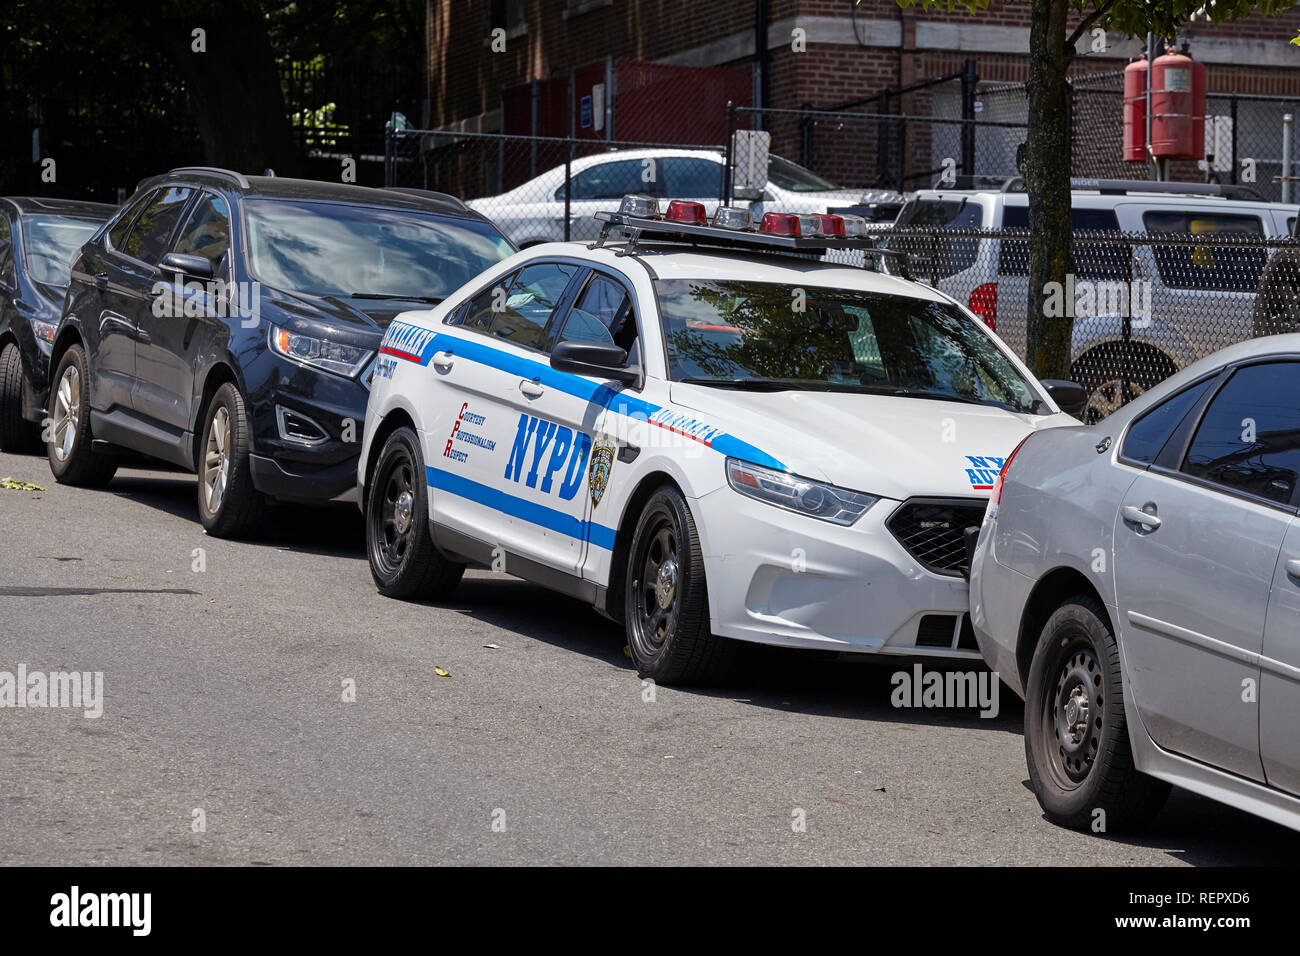 New York, USA - 29. Juni 2018: NYPD Fahrzeug durch eine Straße auf Staten Island geparkt. New York City Police Department ist die größte und eine der ältesten Stockfoto